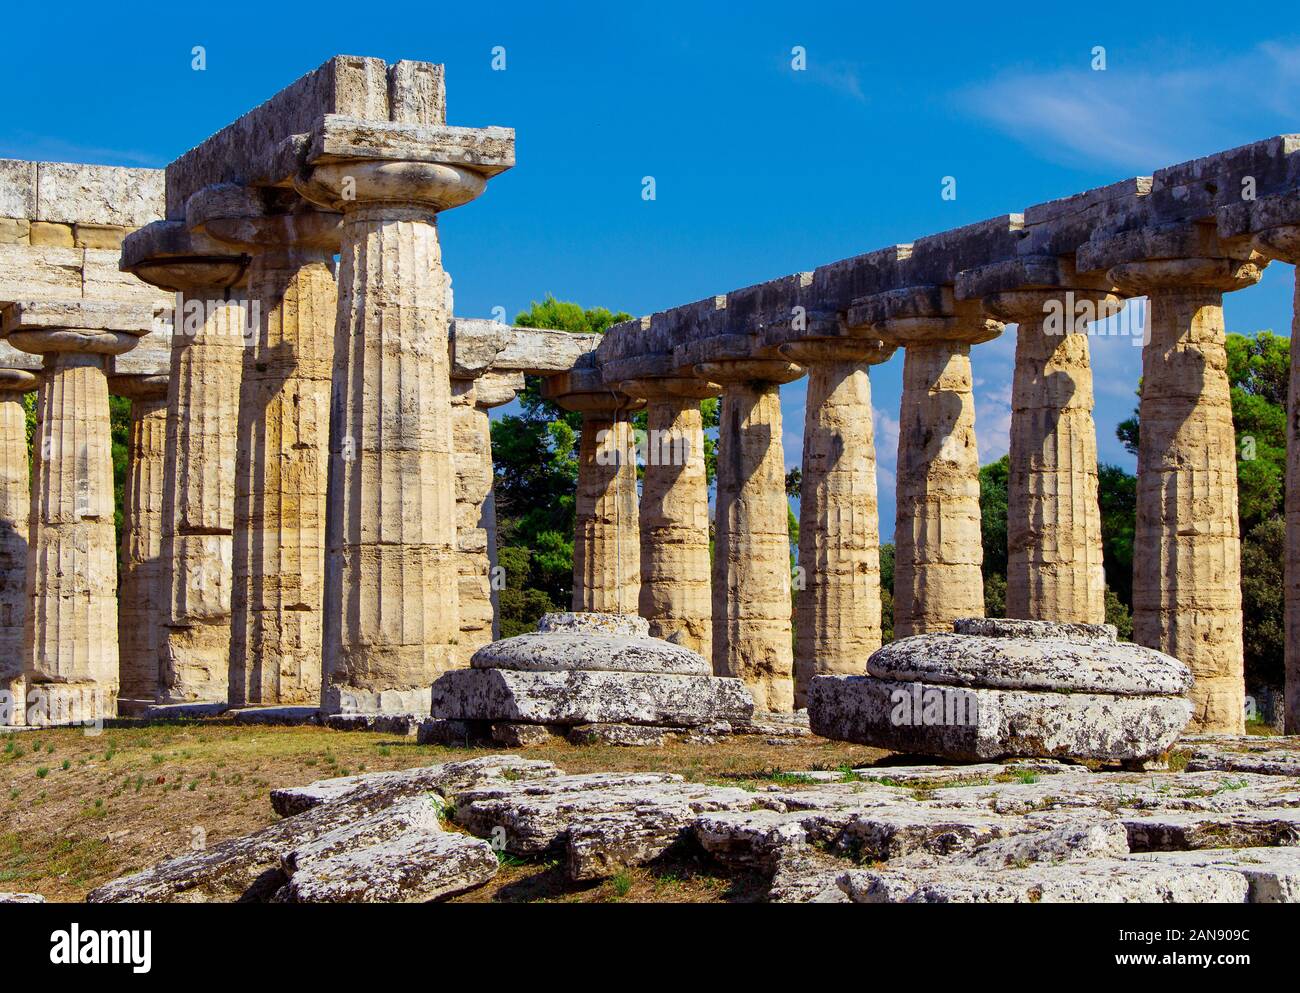 Vista interior del templo griego de HERA II en el sitio arqueológico de Paestum (Poseidonia), Salerno, Campania, Italia Foto de stock